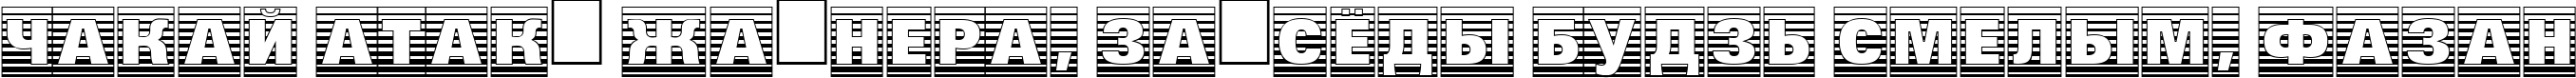 Пример написания шрифтом a_GroticTtlCmGdStrHv текста на белорусском